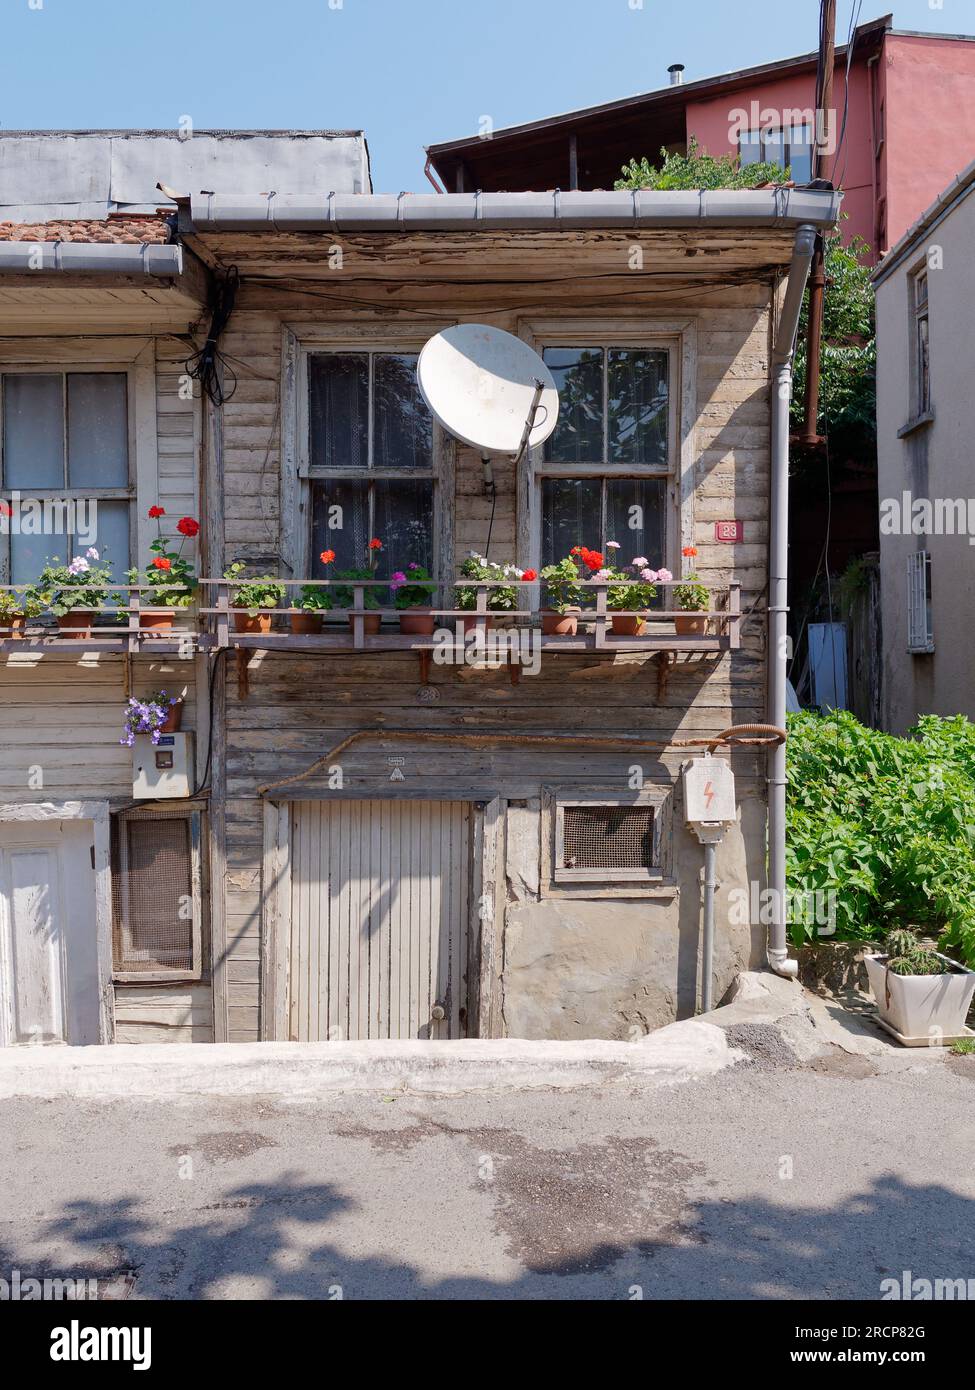 Heruntergekommenes, aber malerisches Haus in Anadolu mit einem hölzernen Fenstervorsprung voller Blumentöpfe und einer Satellitenschüssel darüber. Istanbul, Türkei Stockfoto